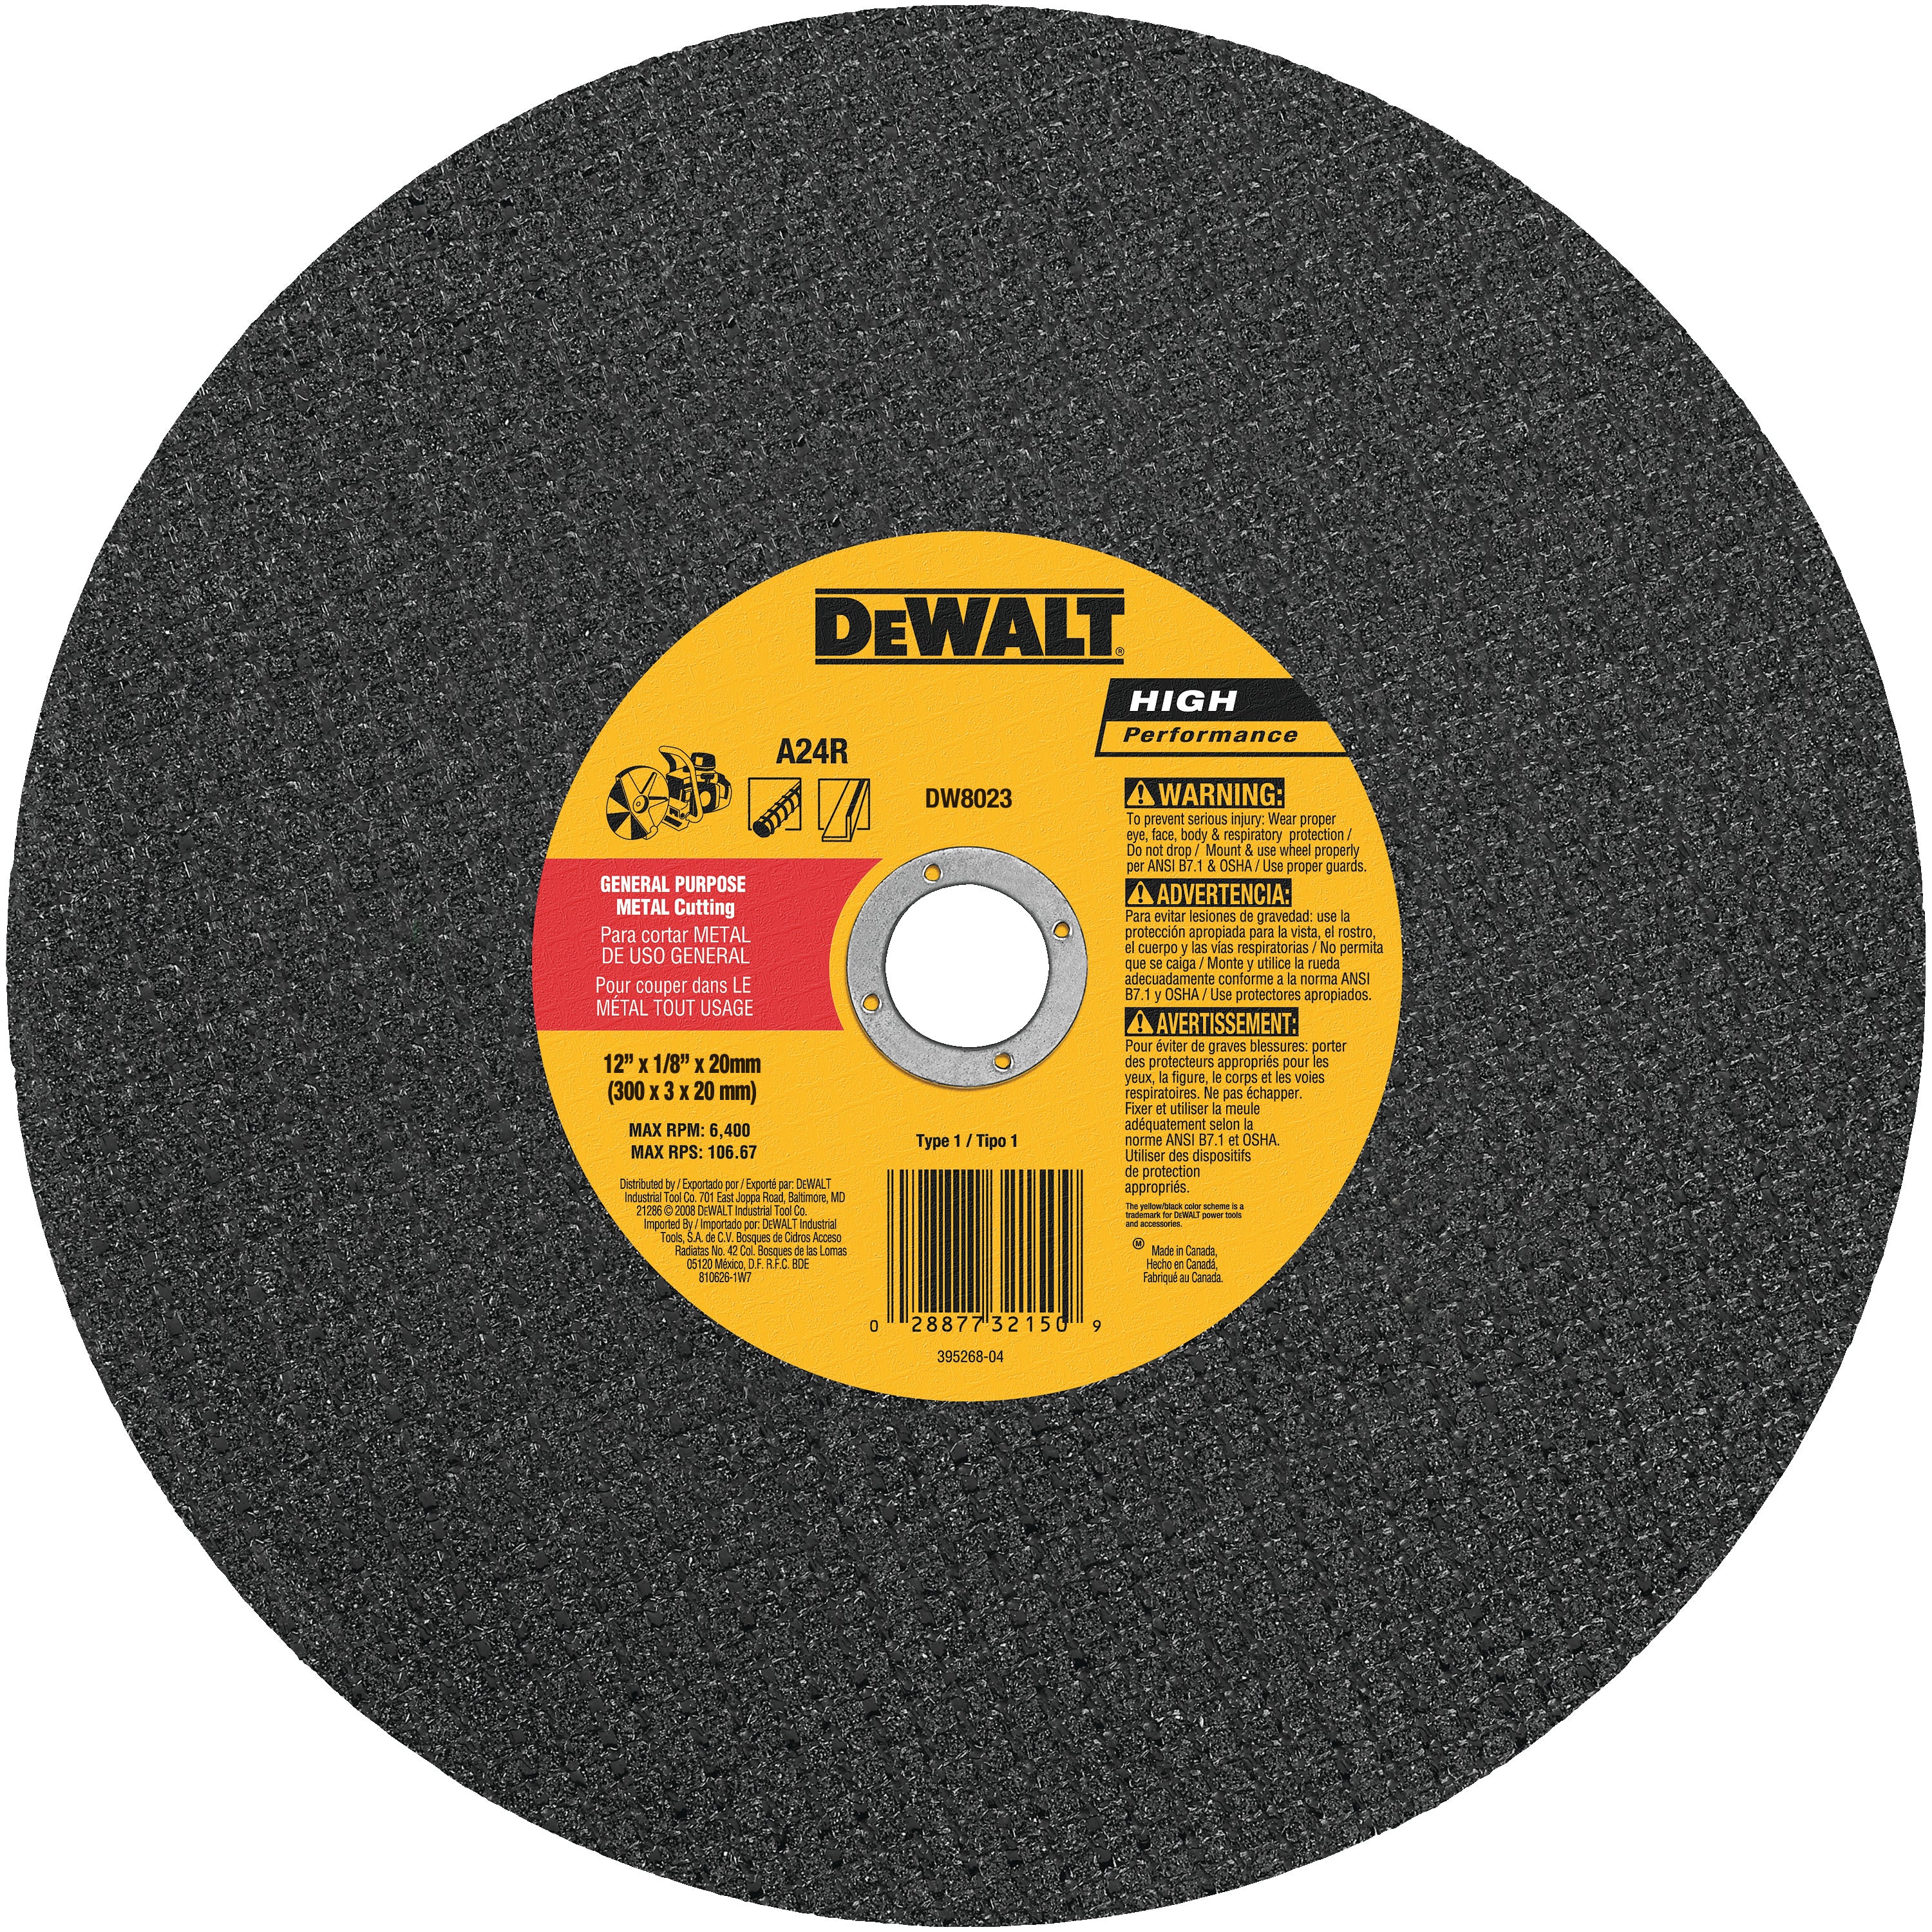 DEWALT DW8023 12-Inch x 1/8-Inch x 20mm A24N Abrasive Metal Cutting Wheel - wise-line-tools